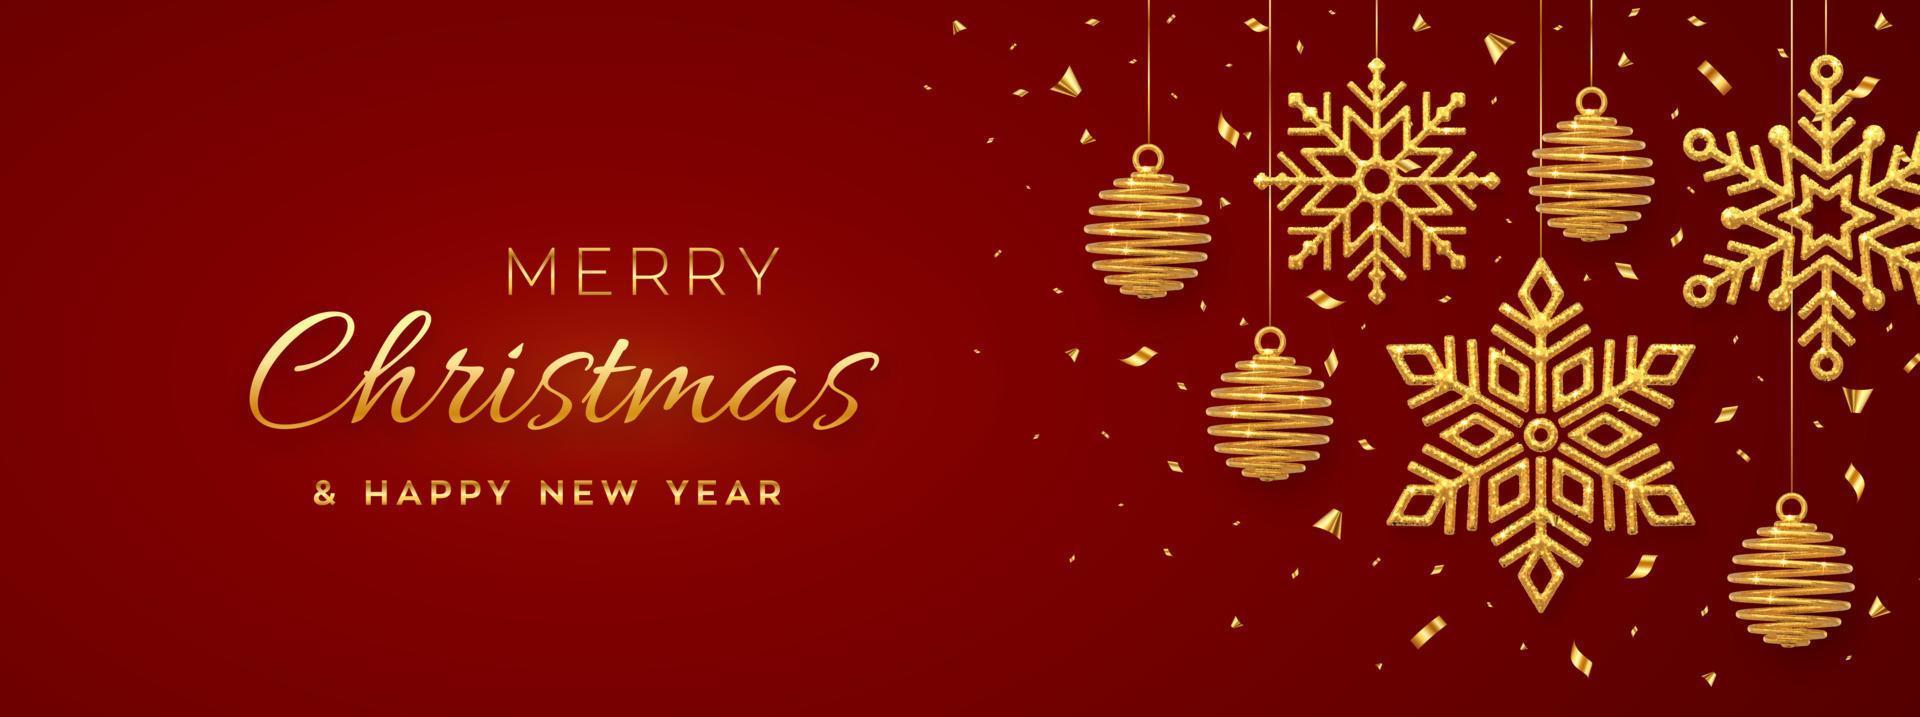 Kerstmis rode achtergrond met hangende glanzende gouden sneeuwvlokken en ballen. vrolijk kerstfeest wenskaart. vakantie kerstmis en nieuwjaar poster, webbanner. vectorillustratie. vector